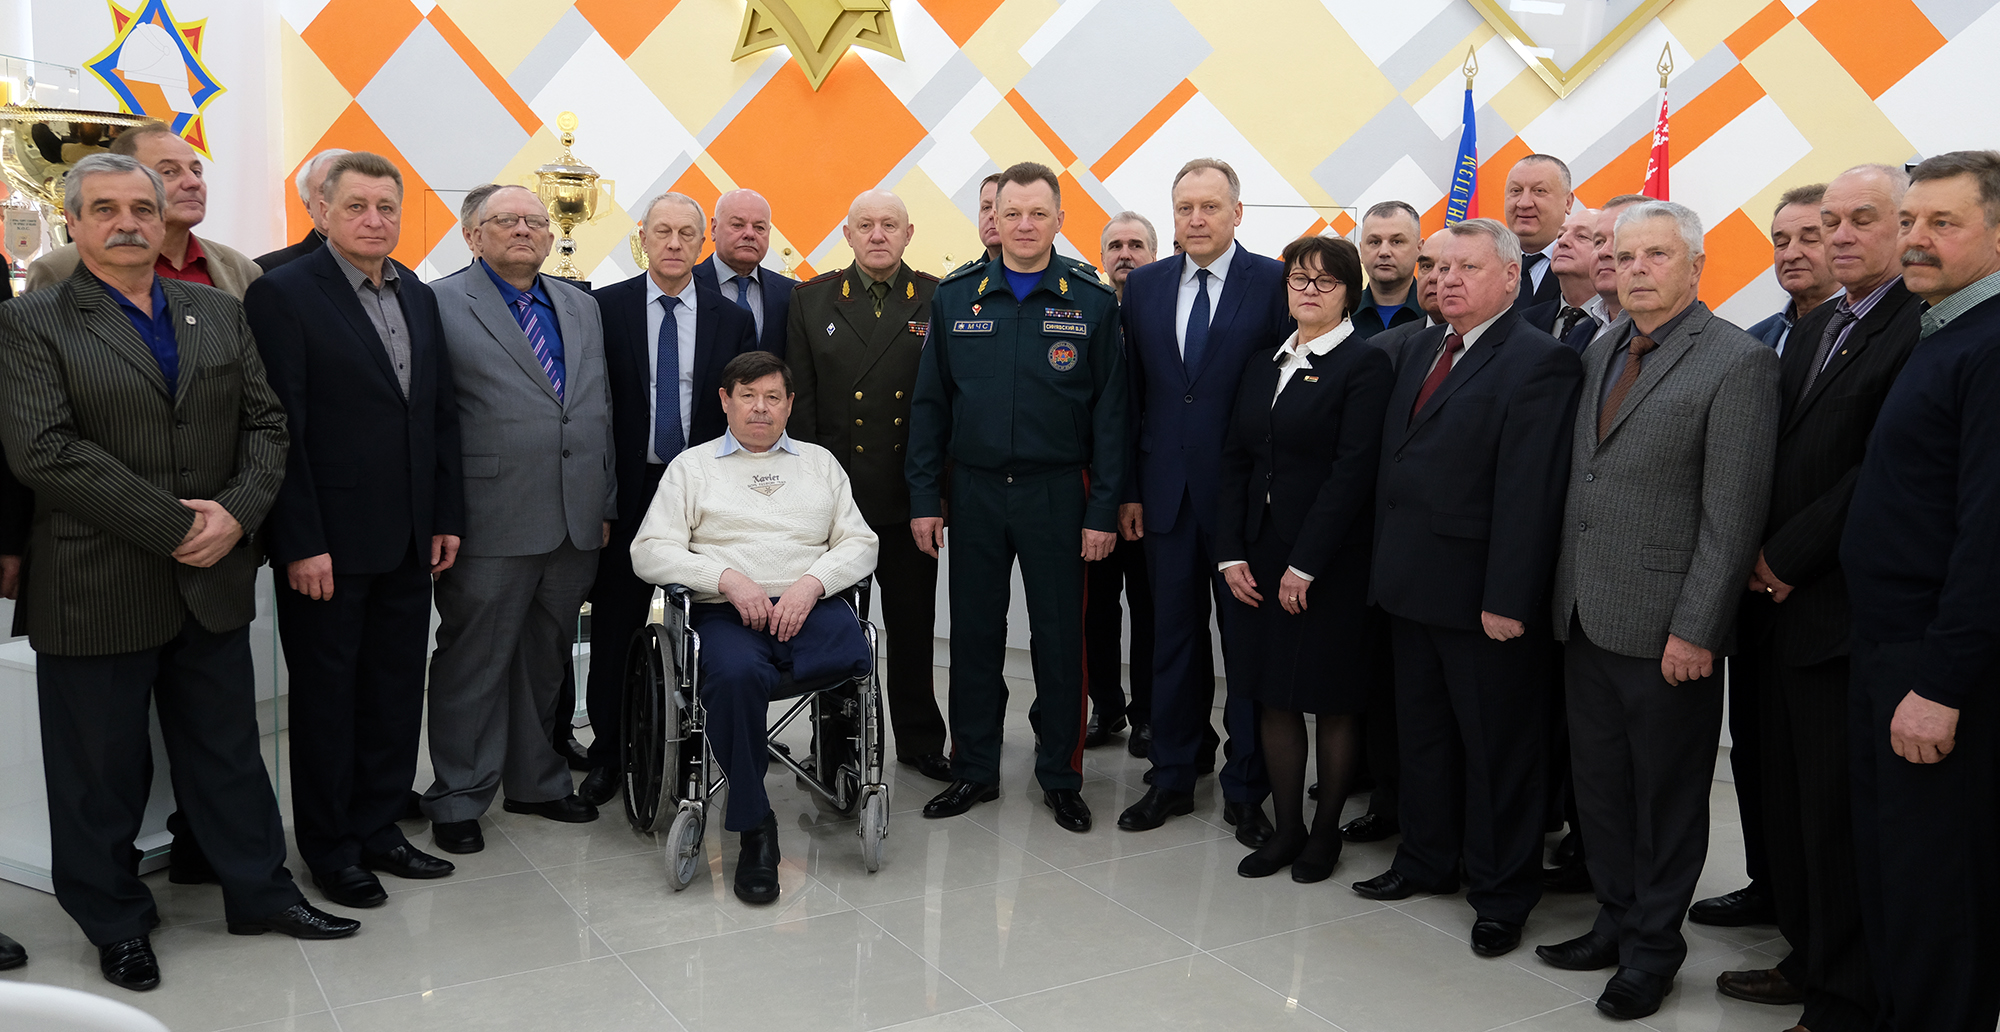 Музейно-выставочная экспозиция «Спорт во имя спасения» открылась в Минске